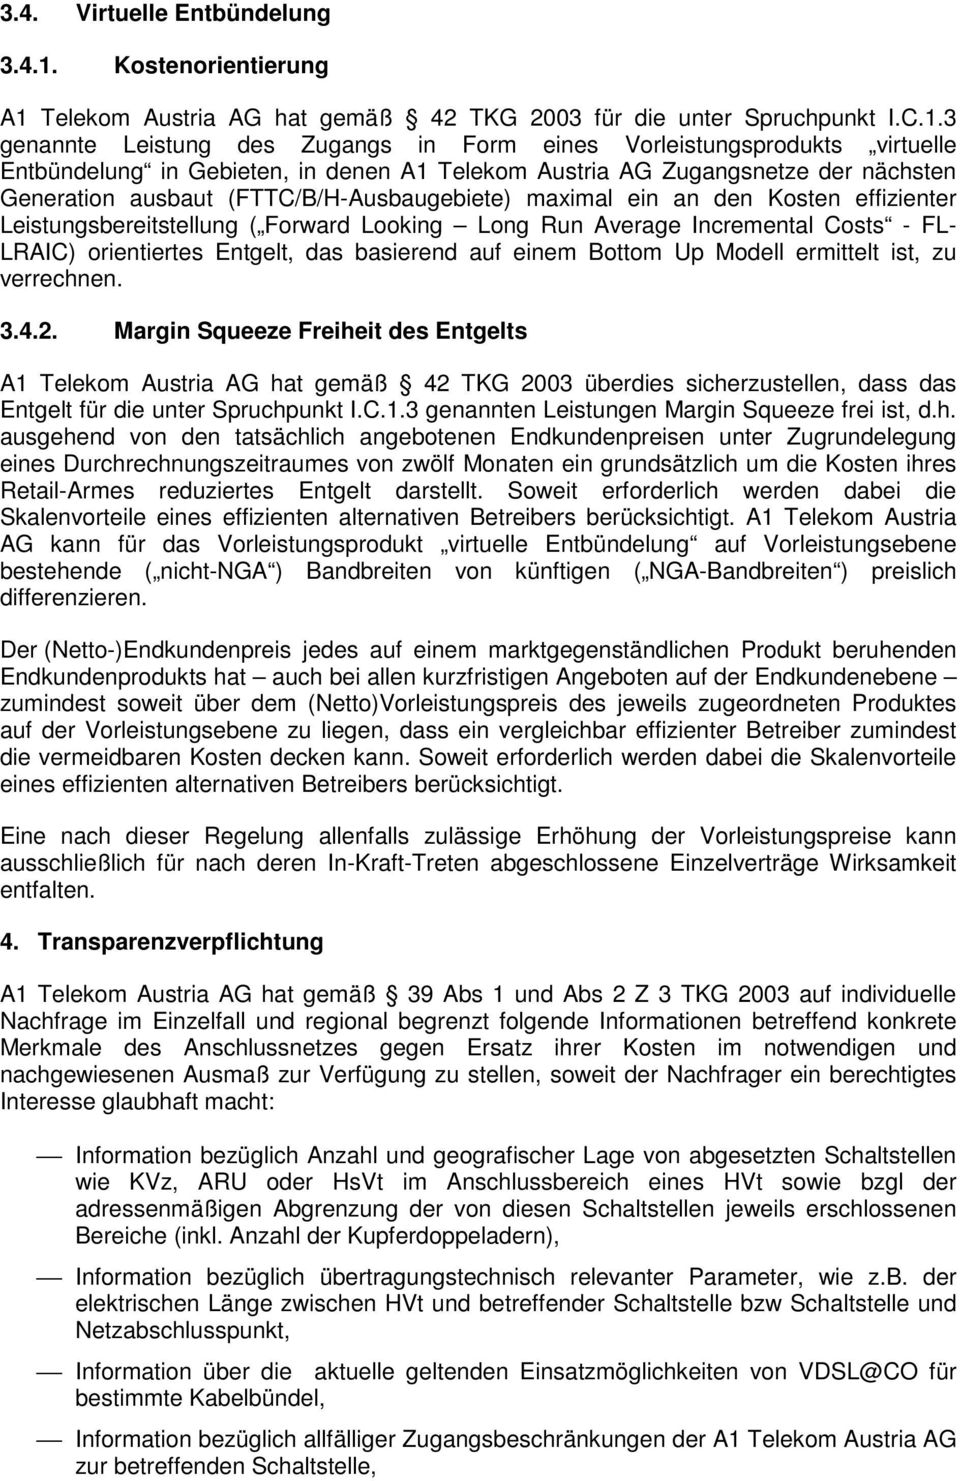 Telekom Austria AG hat gemäß 42 TKG 2003 für die unter Spruchpunkt I.C.1.